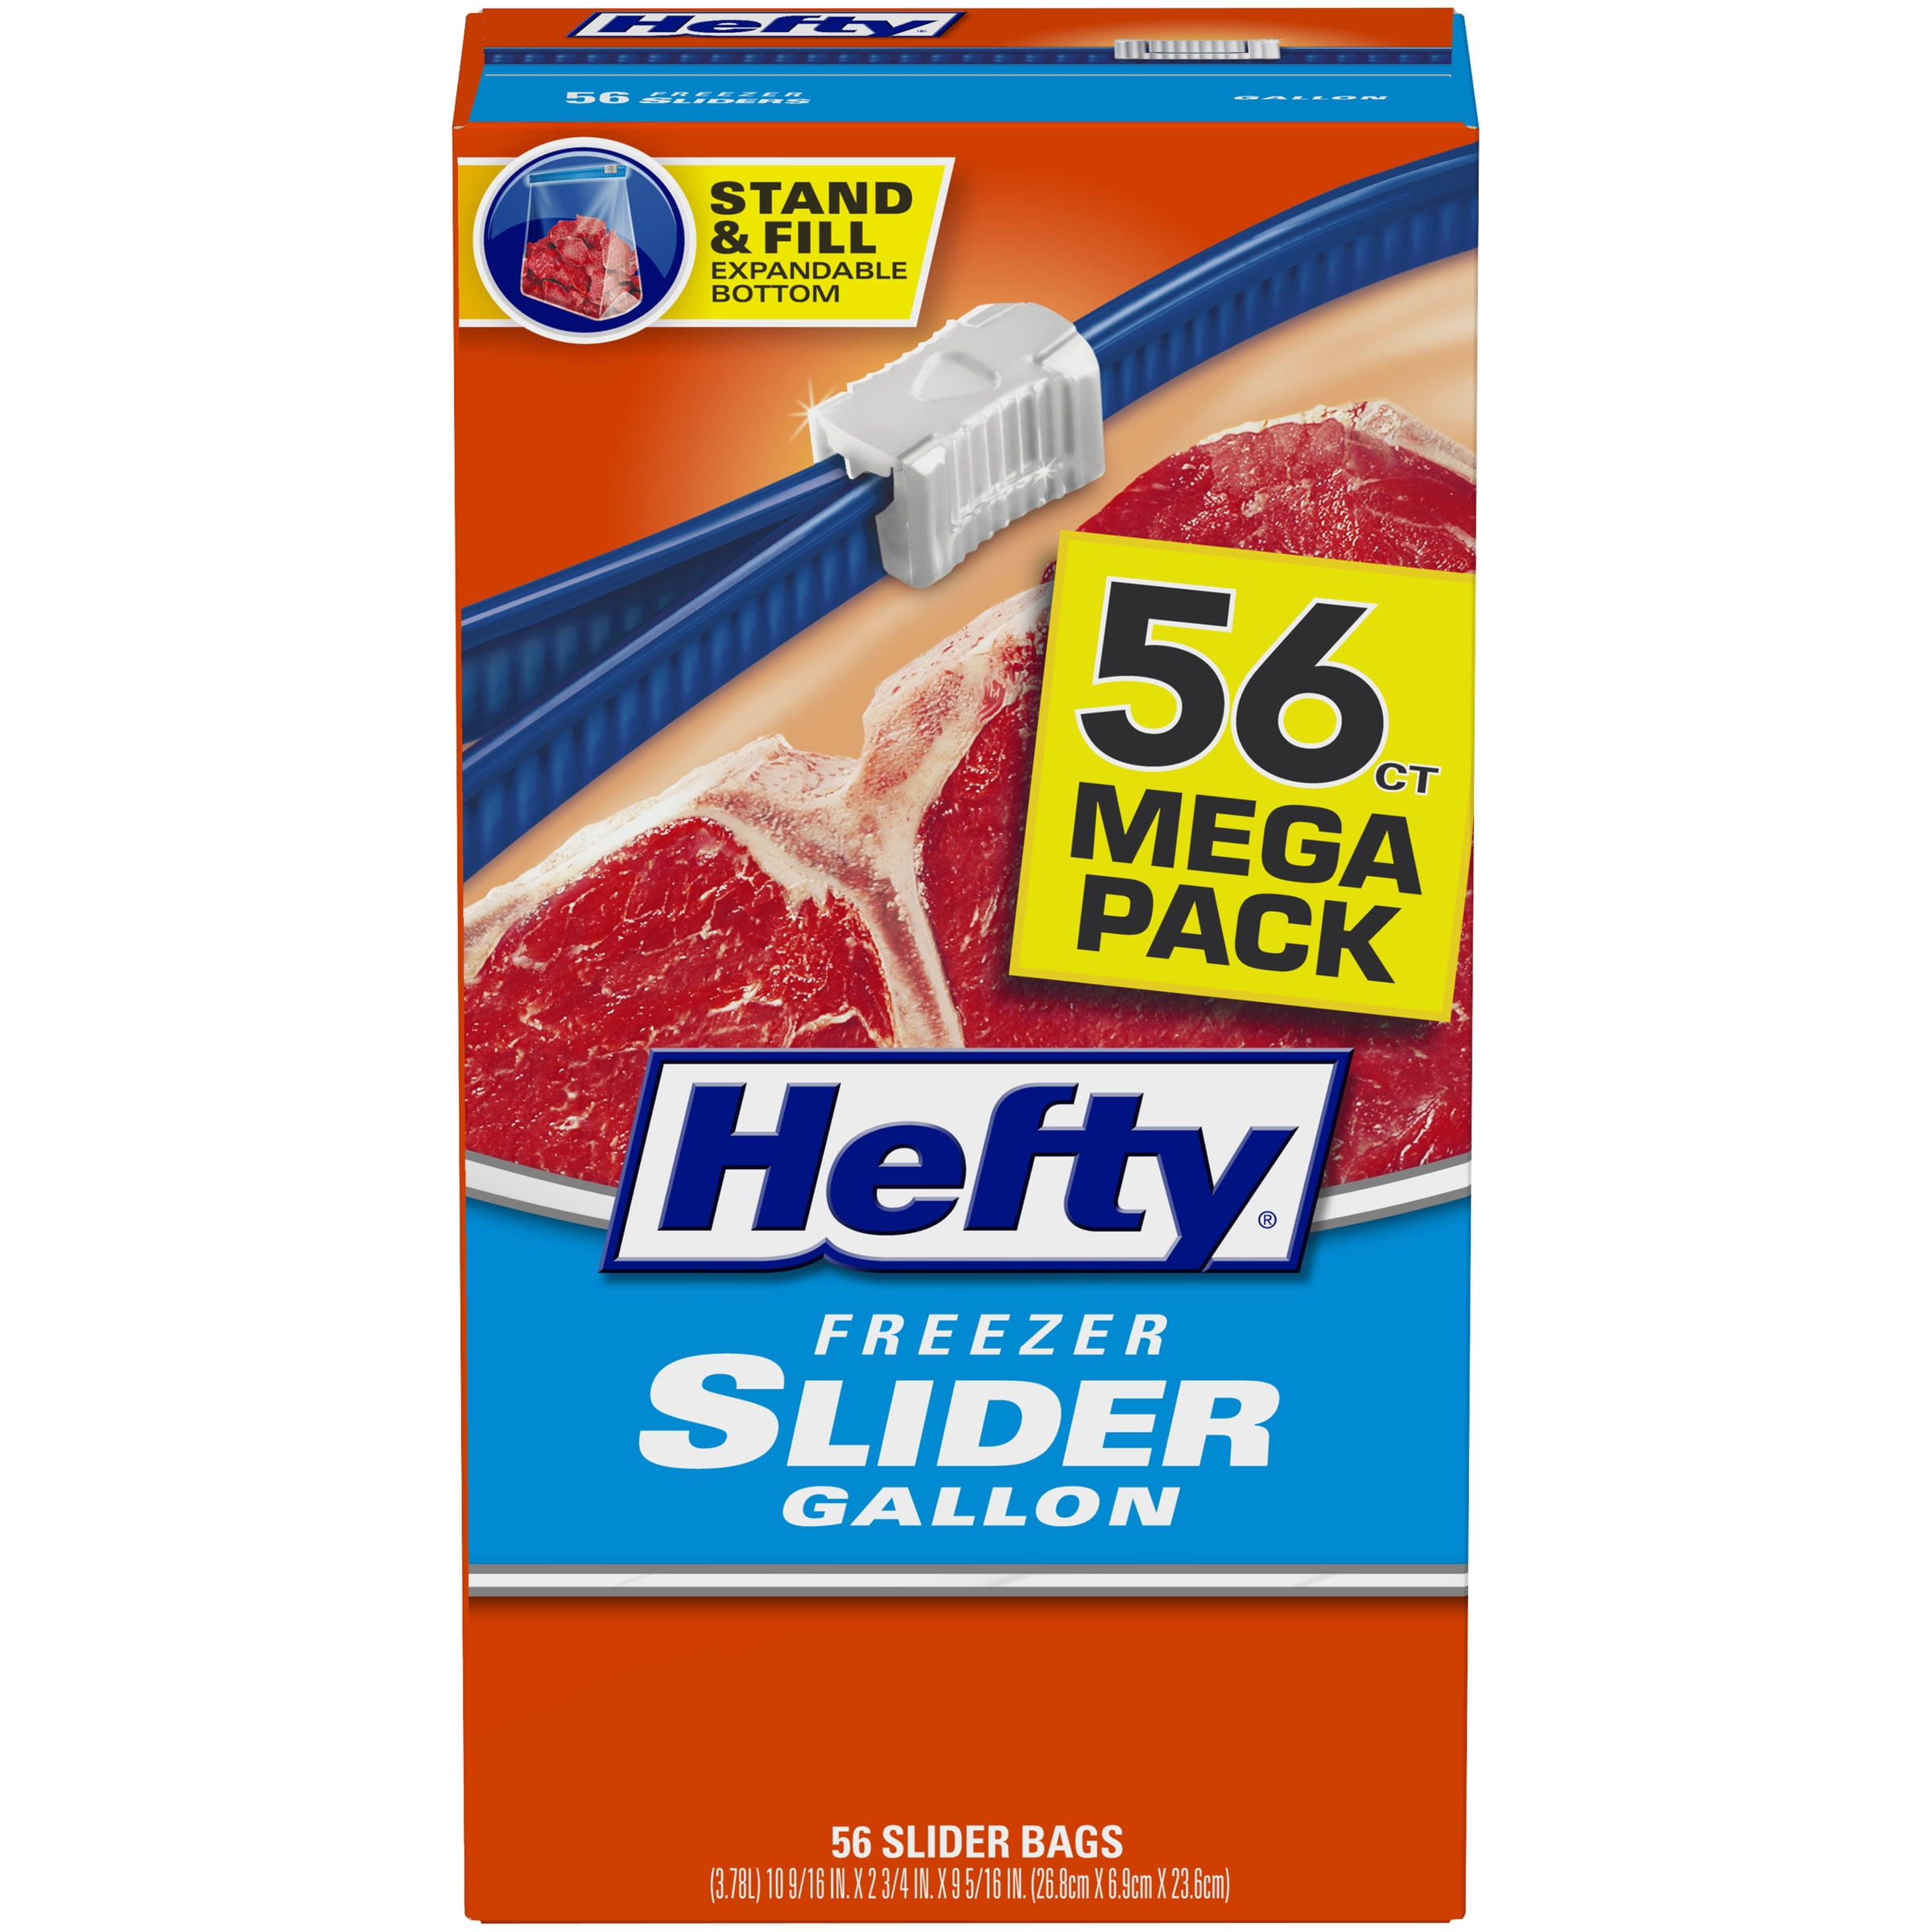  Hefty Slider Freezer Calendar Bags, Gallon Size, 100